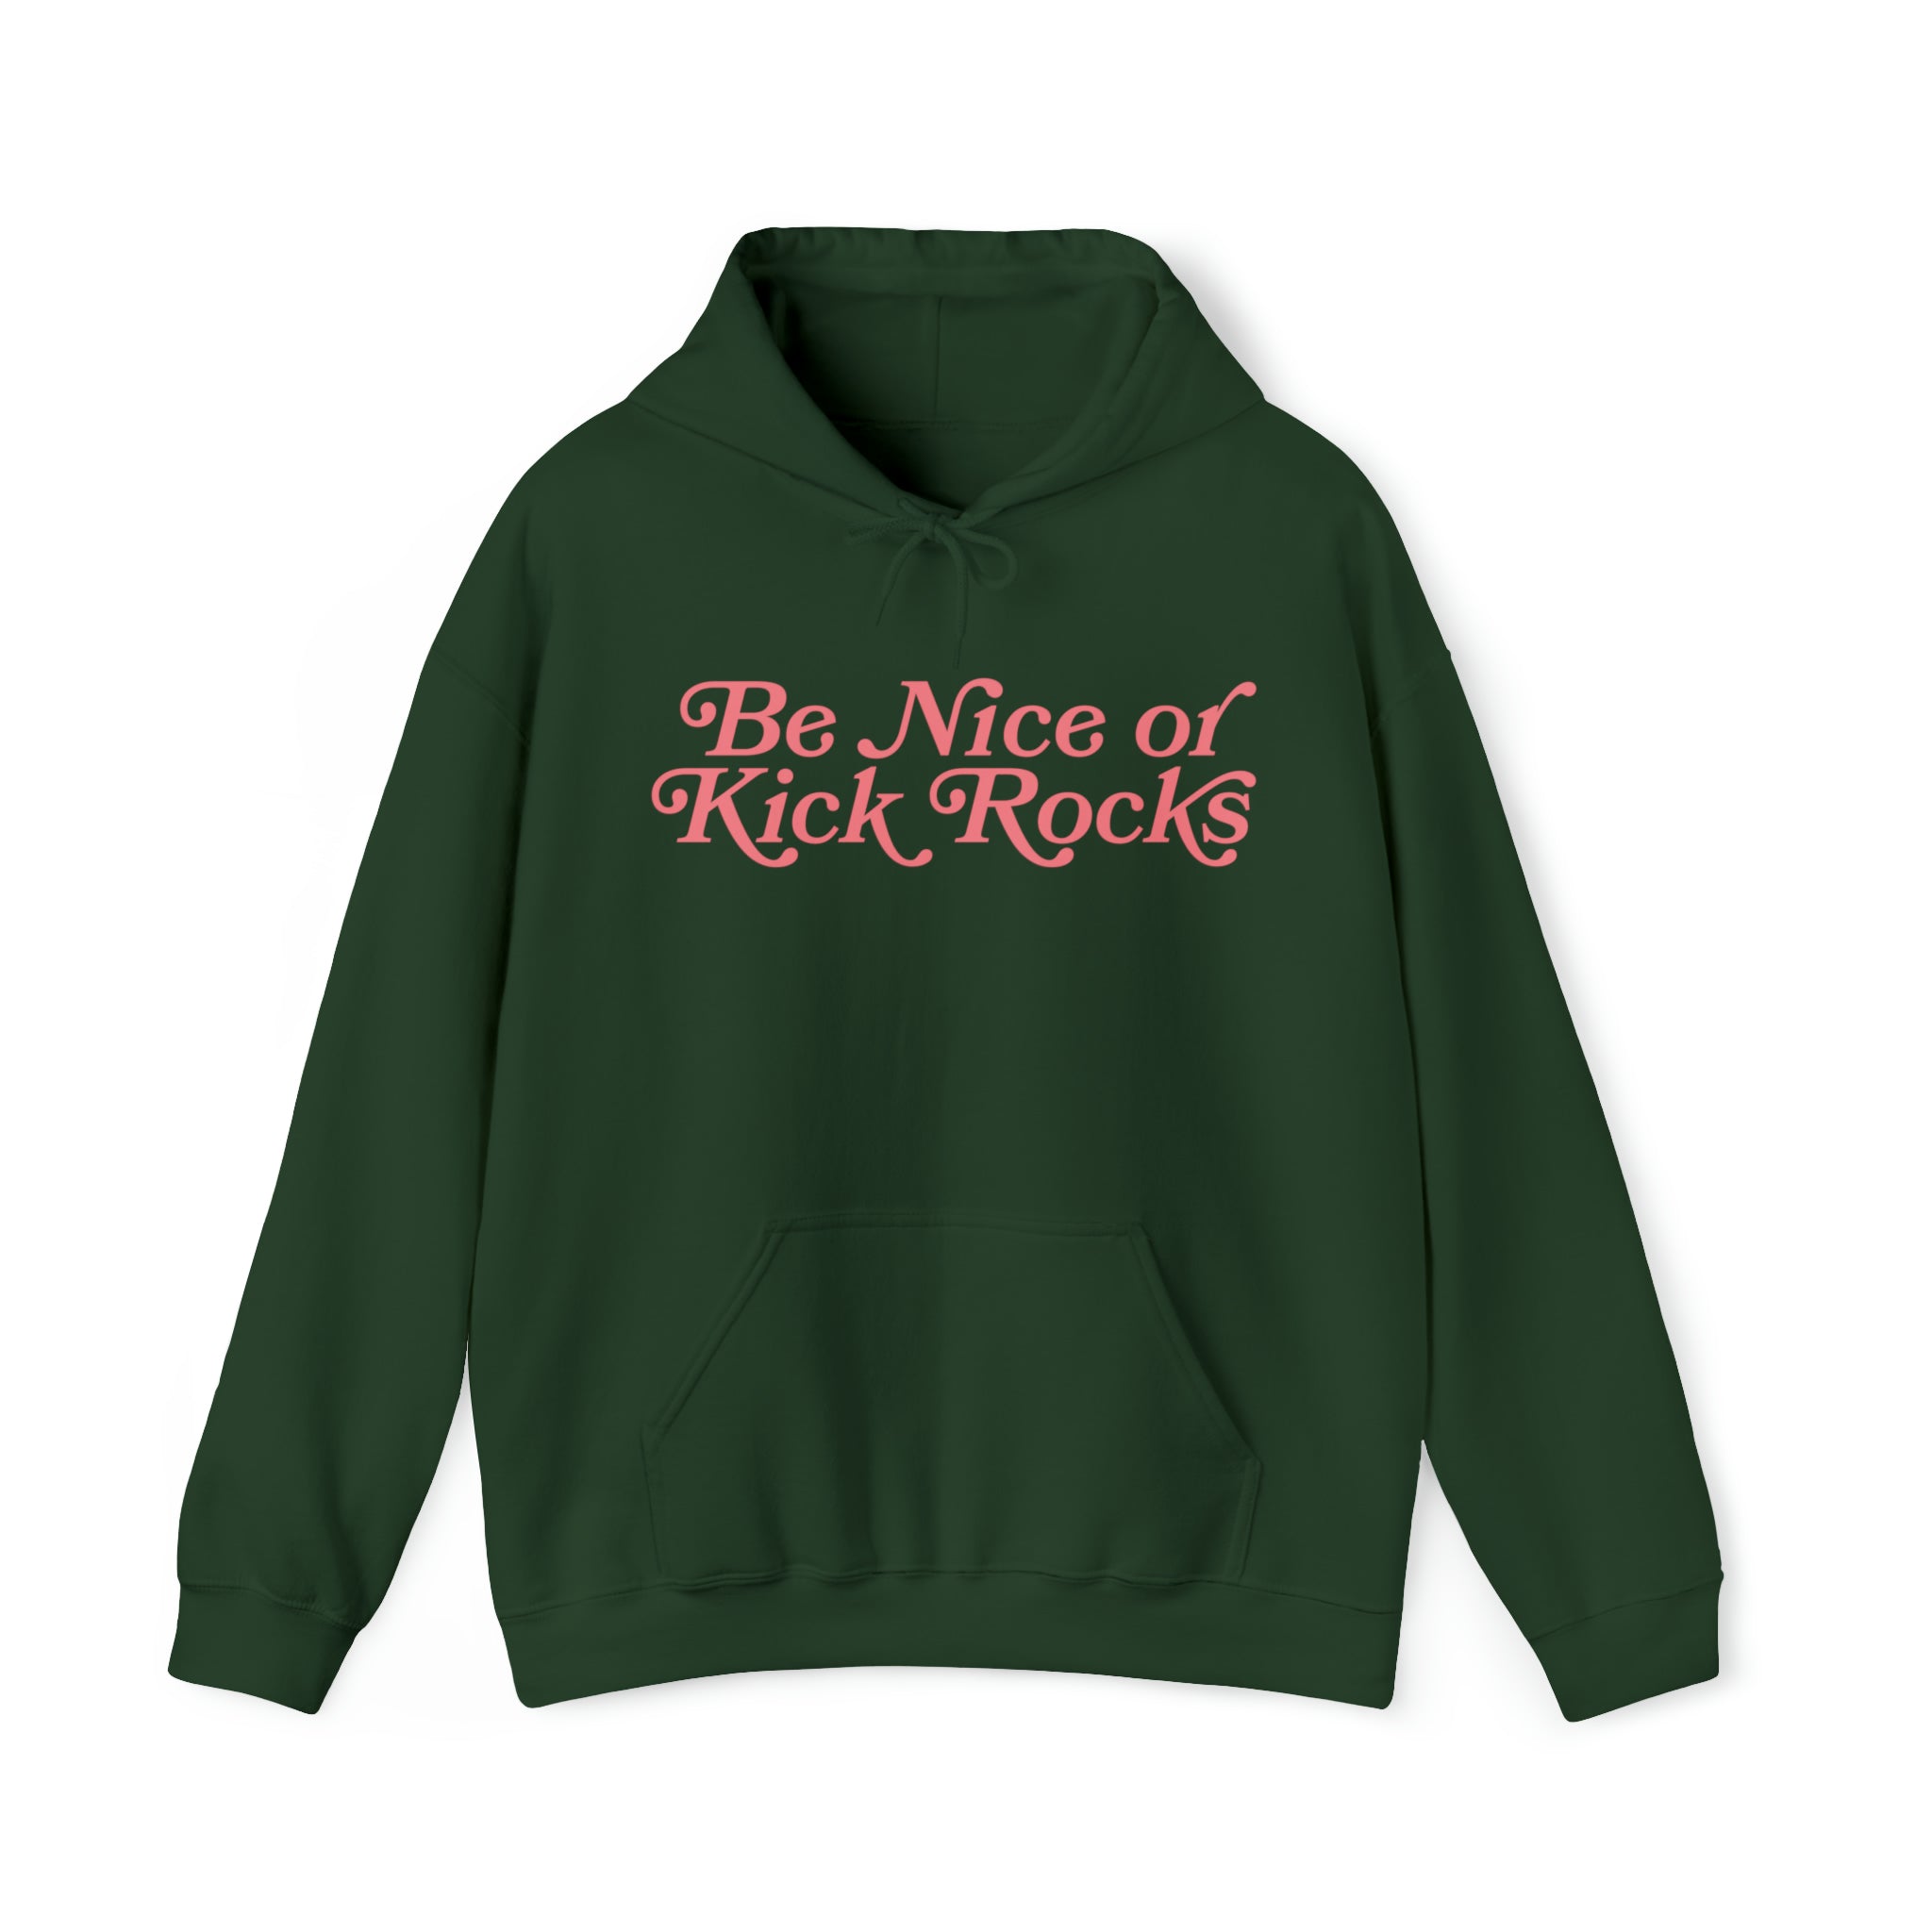 Be Nice or Kick Rocks Hoodie